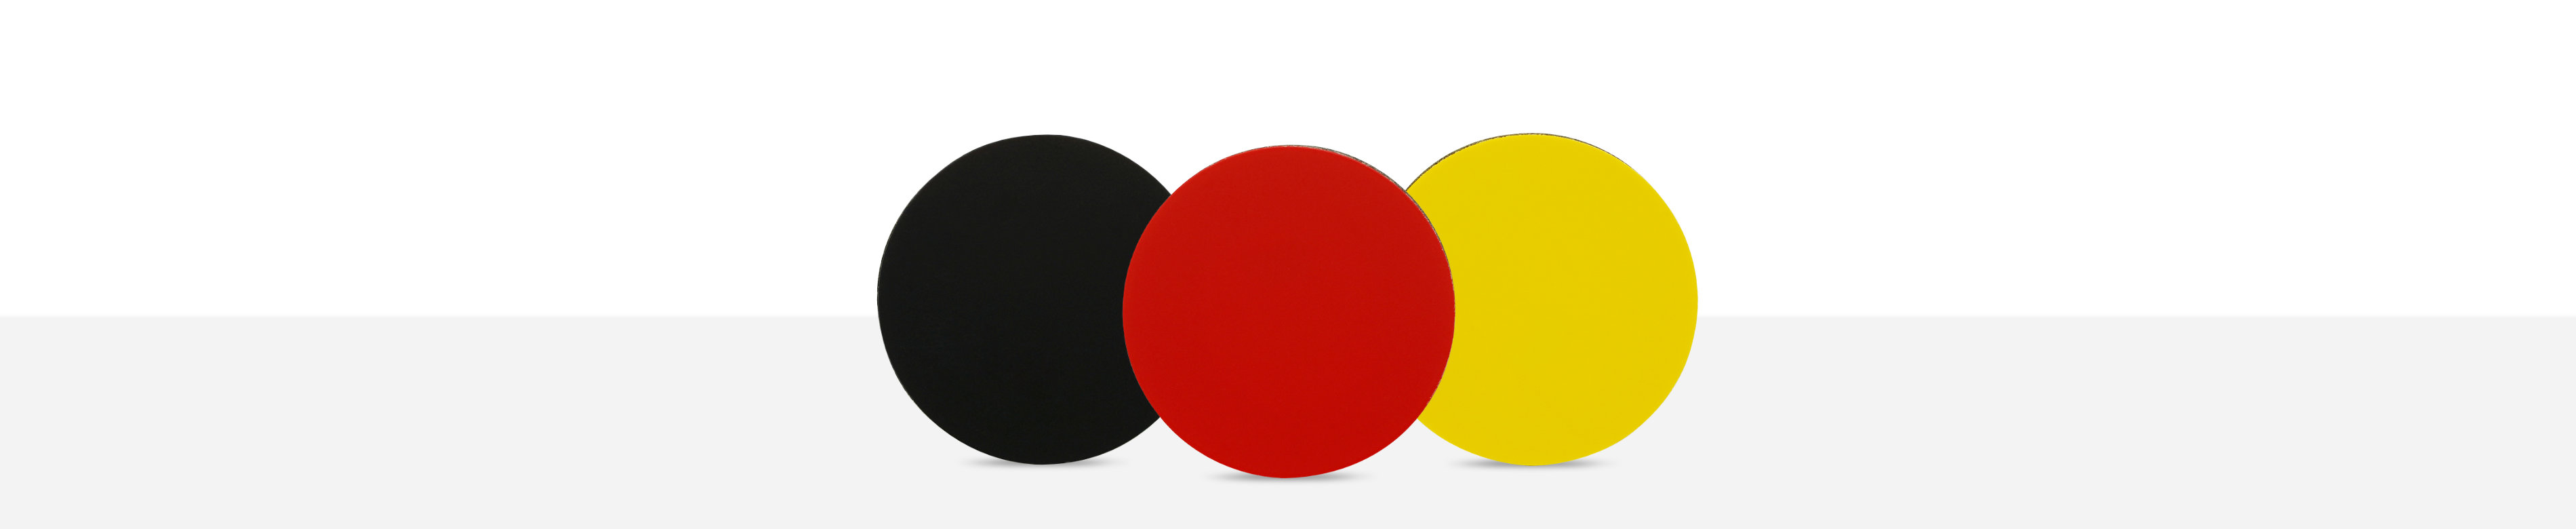 Industrie PVC Münzen in schwarz., rot und gelb